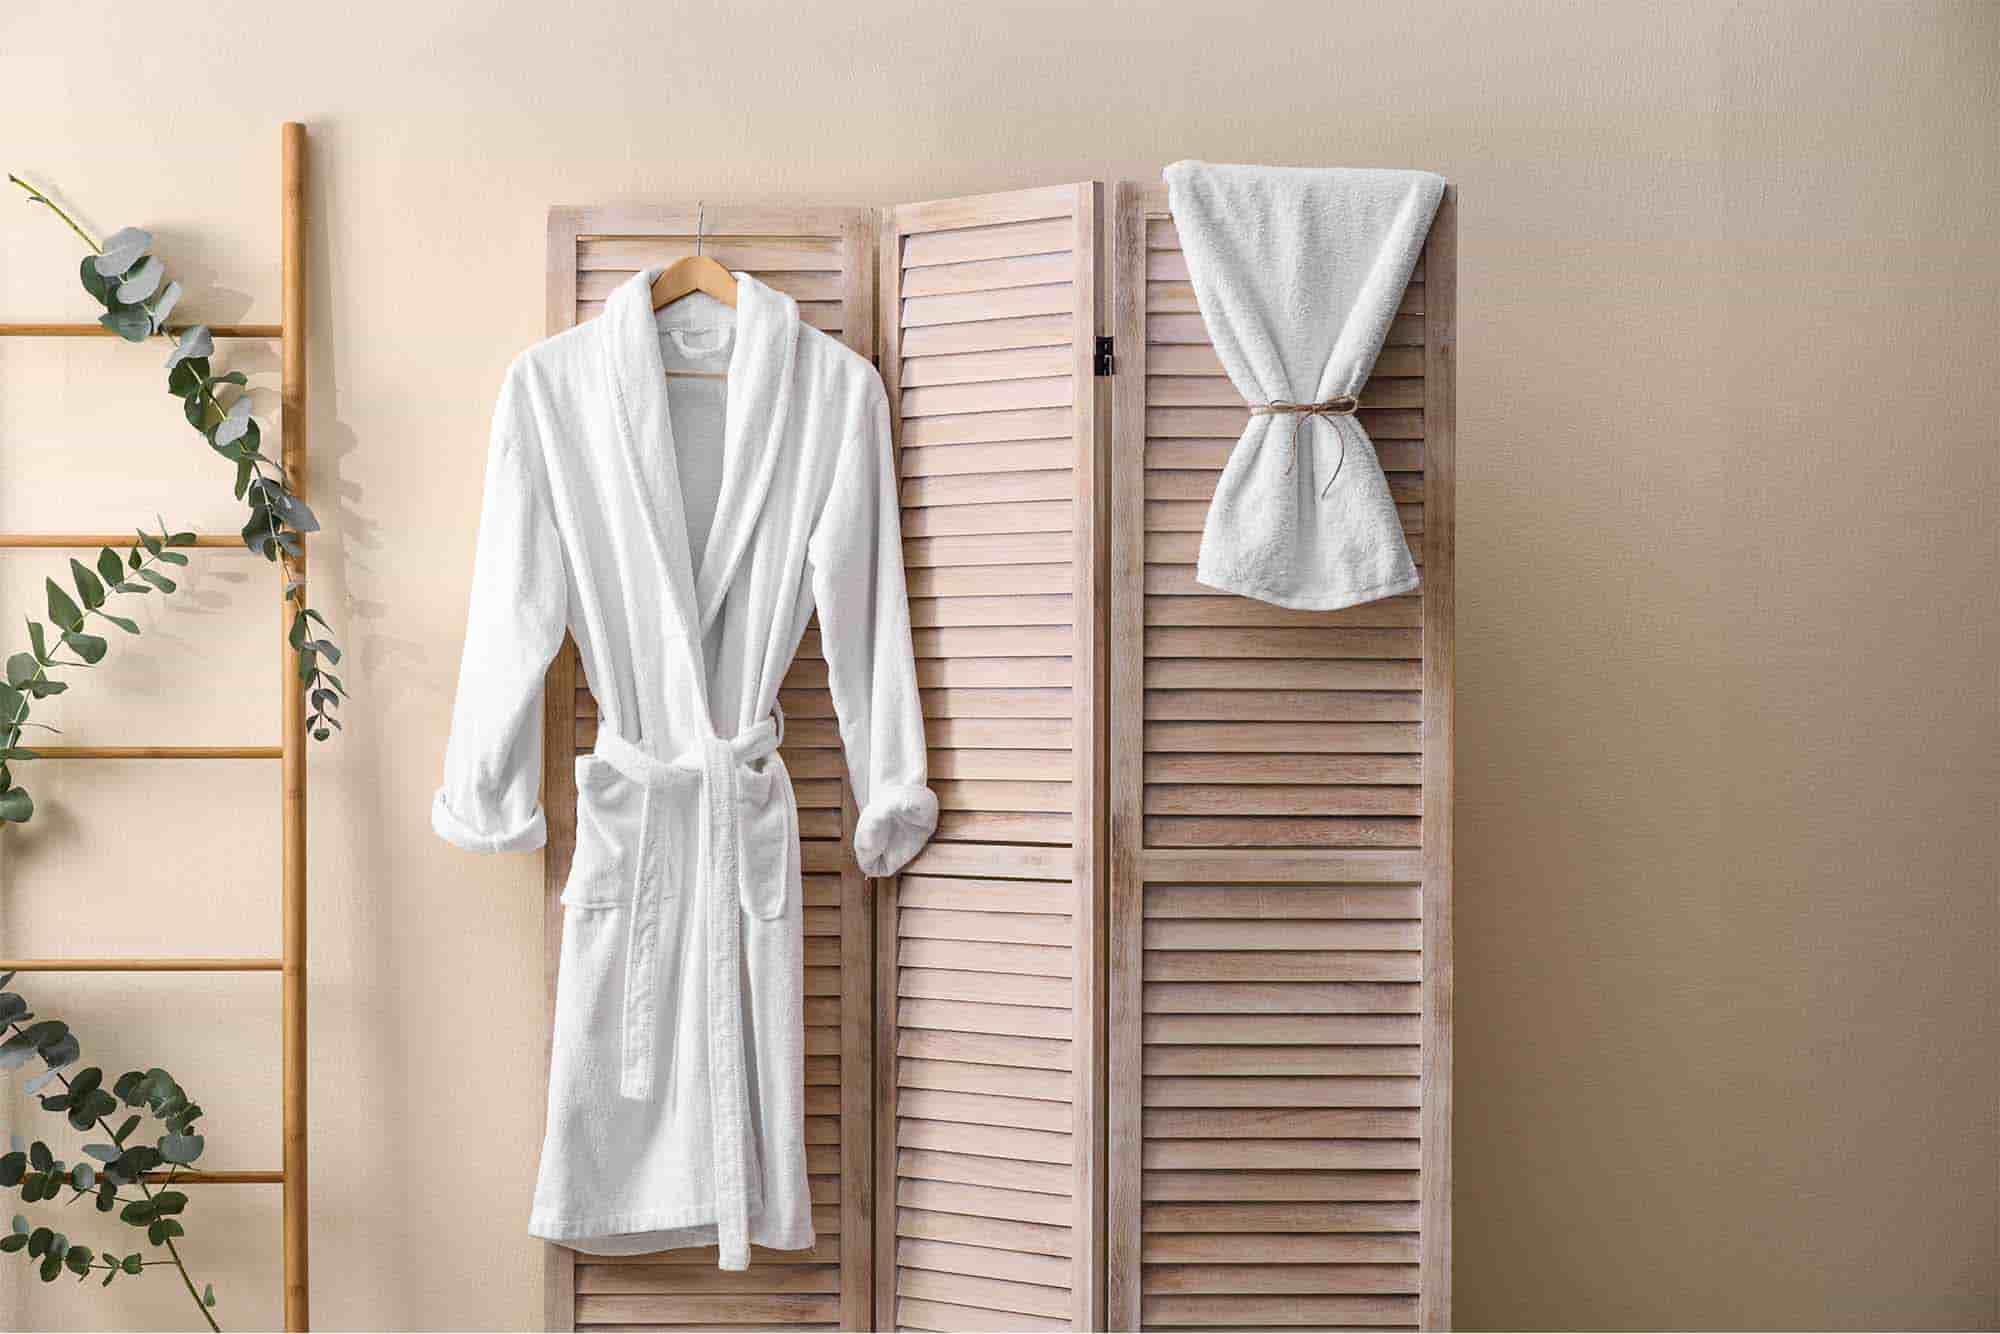 Luxury hotel bathrobe hanging with bath towel in hotel